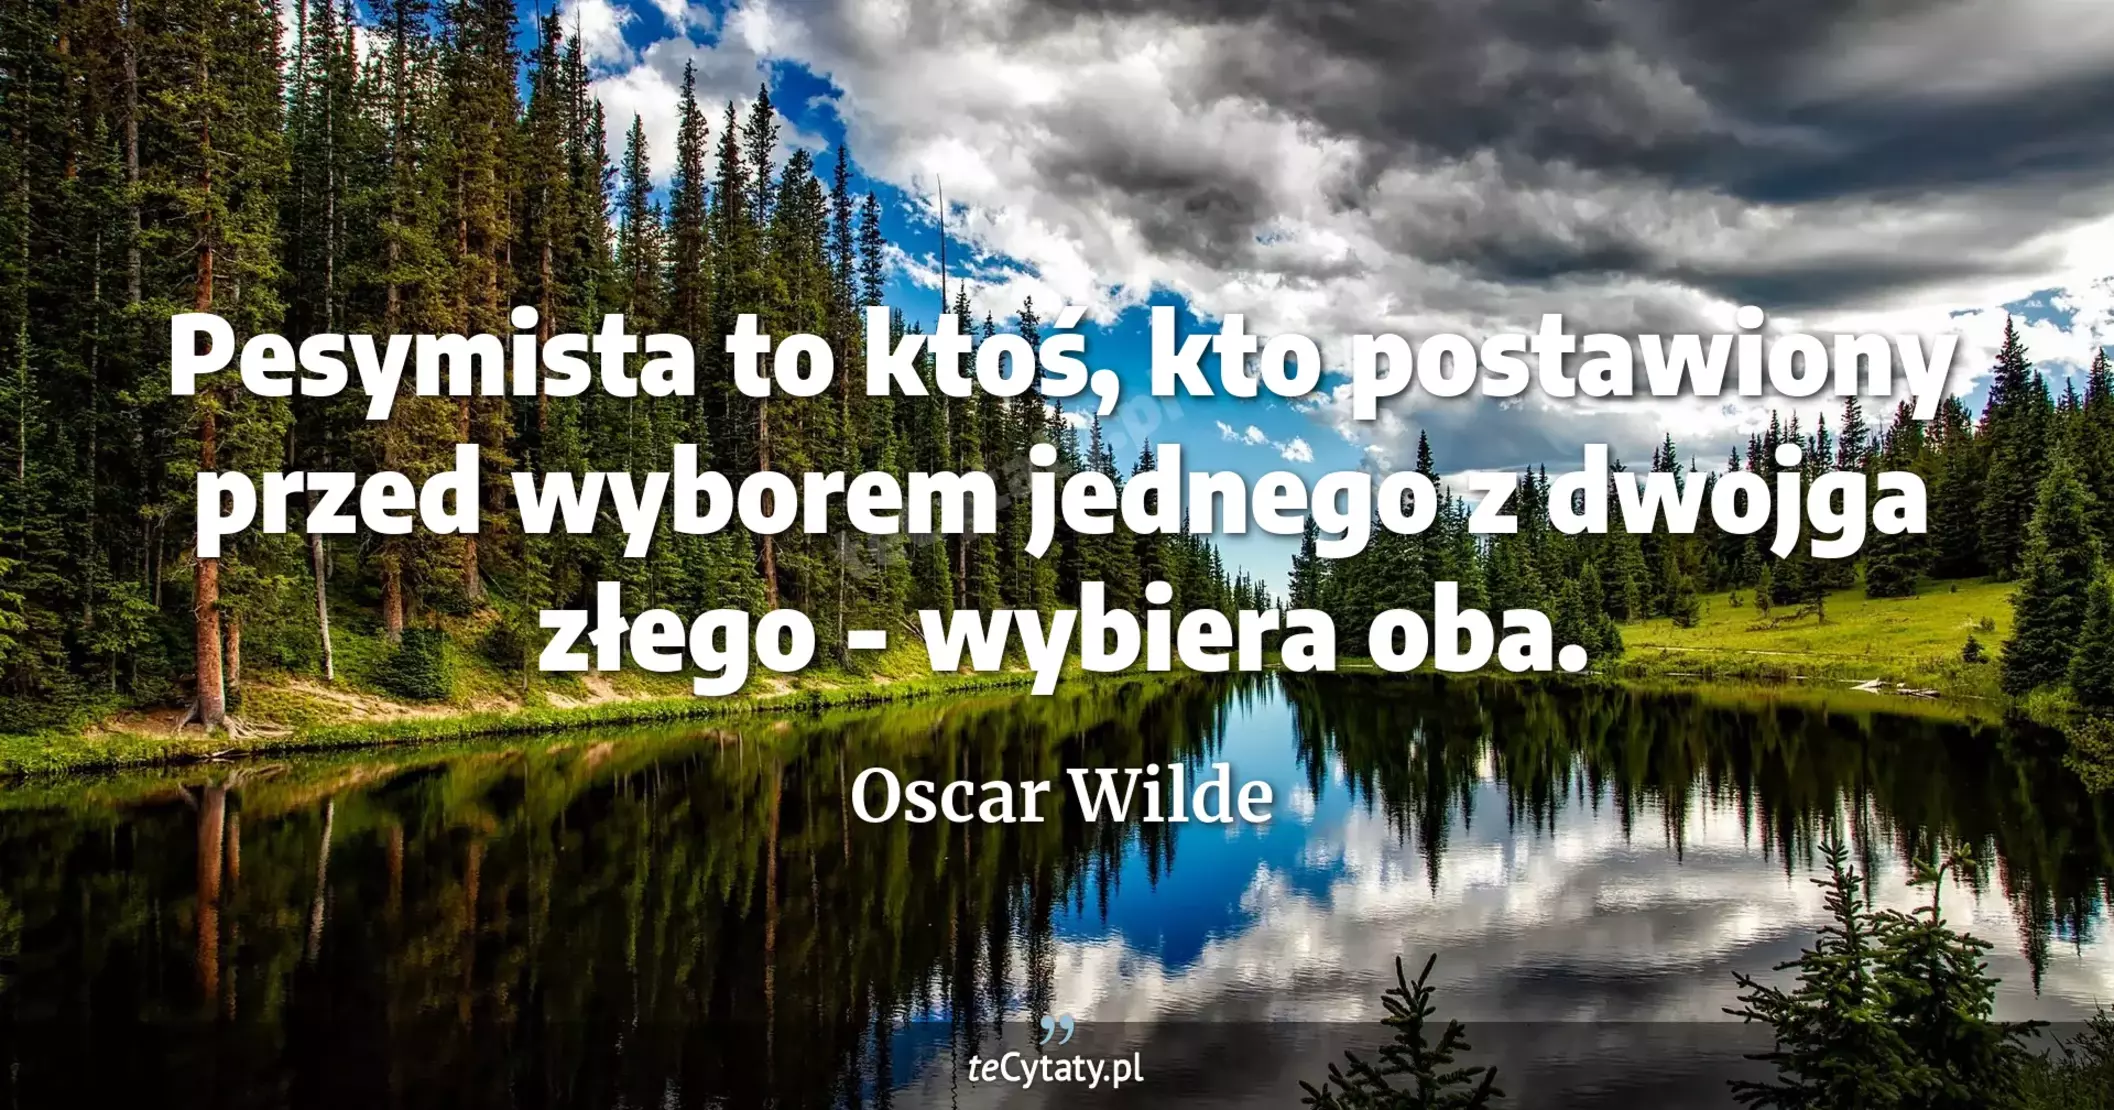 Pesymista to ktoś, kto postawiony przed wyborem jednego z dwojga złego - wybiera oba. - Oscar Wilde